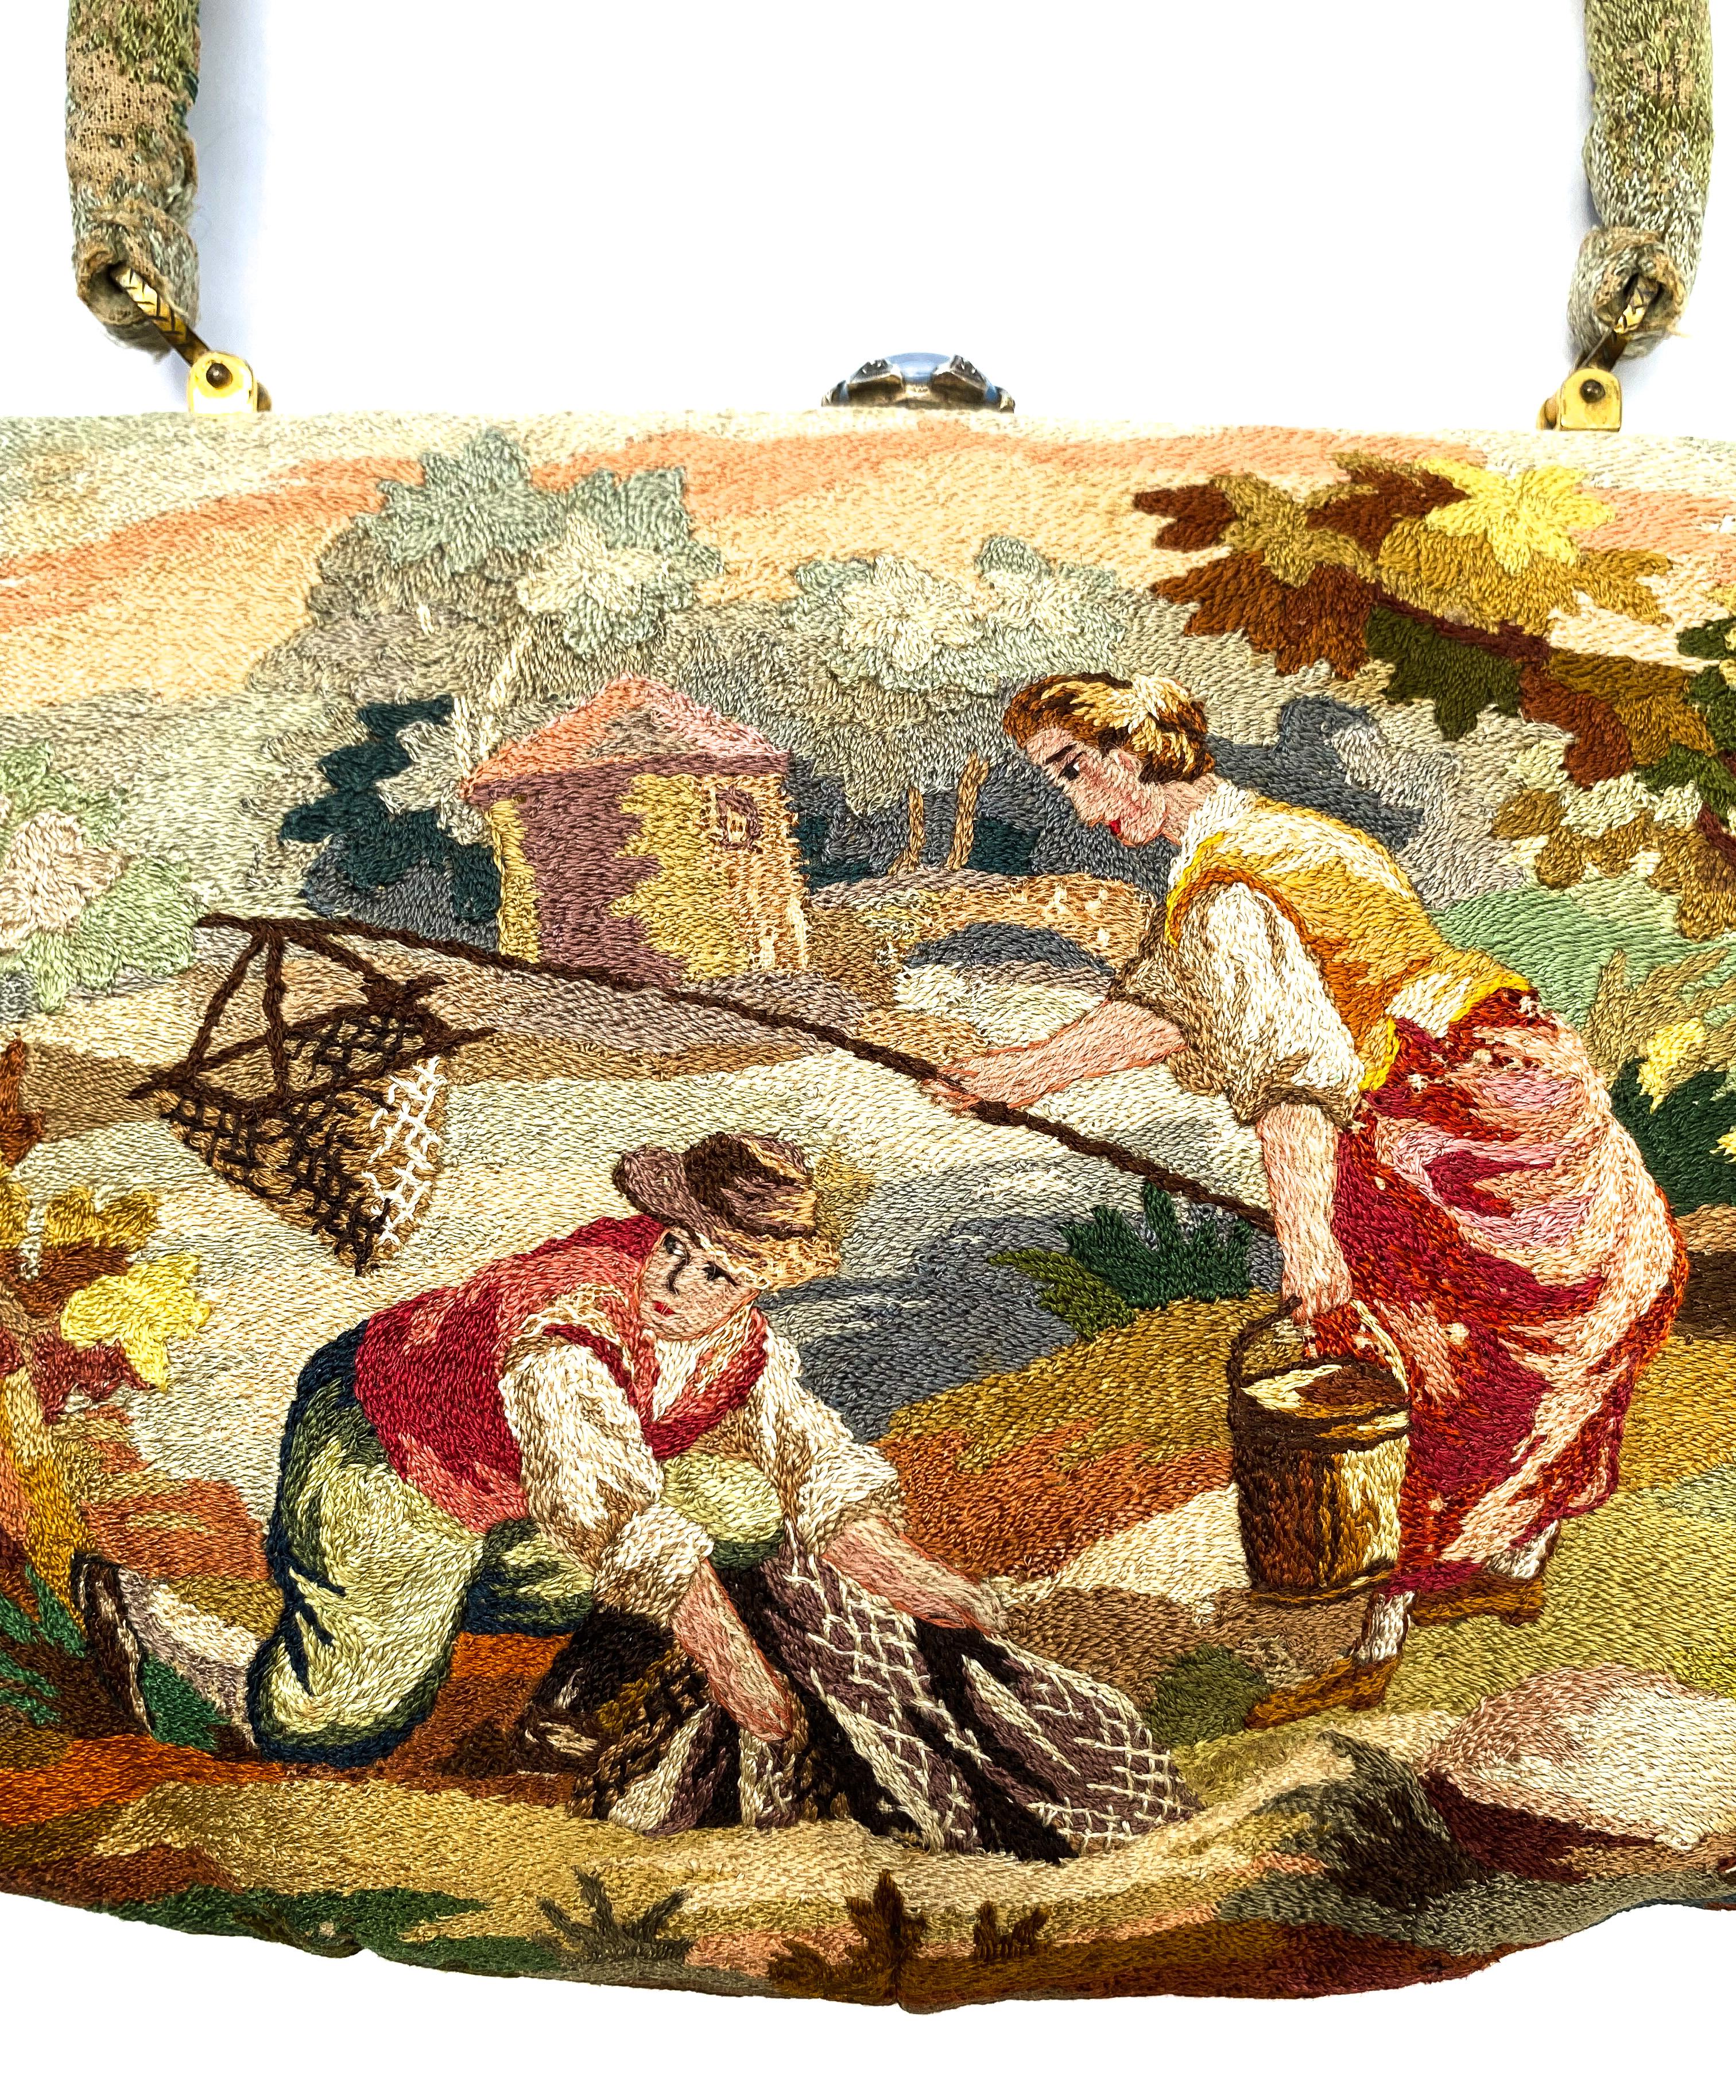 Eine wunderschön handgestickte und genähte Handtasche mit einer bezaubernden antik-rustikalen Szene mit zwei Figuren von Meisterhandwerkern und Luxusgüterherstellern Morabito. Ausgeführt in Seide, in feinen und abwechslungsreichen Stichen, einige in